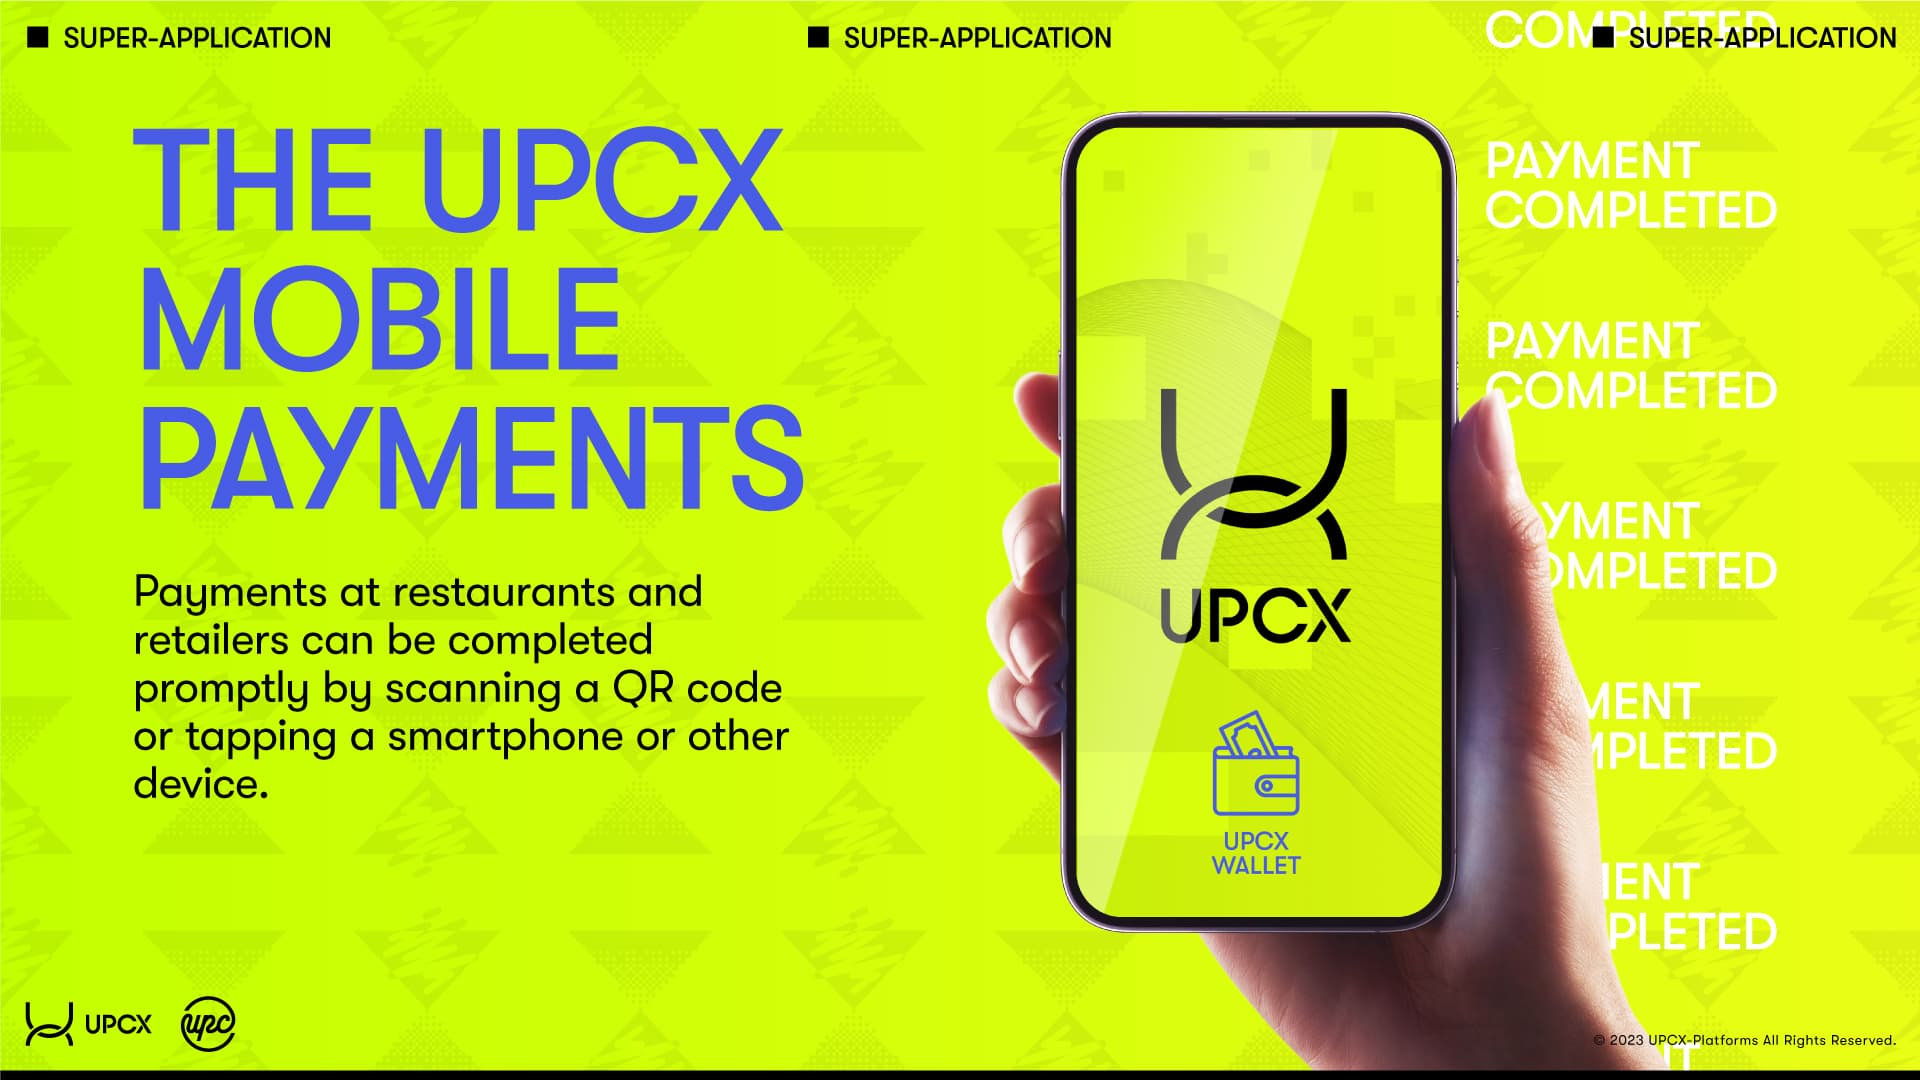 UPCX Mobile Payment description